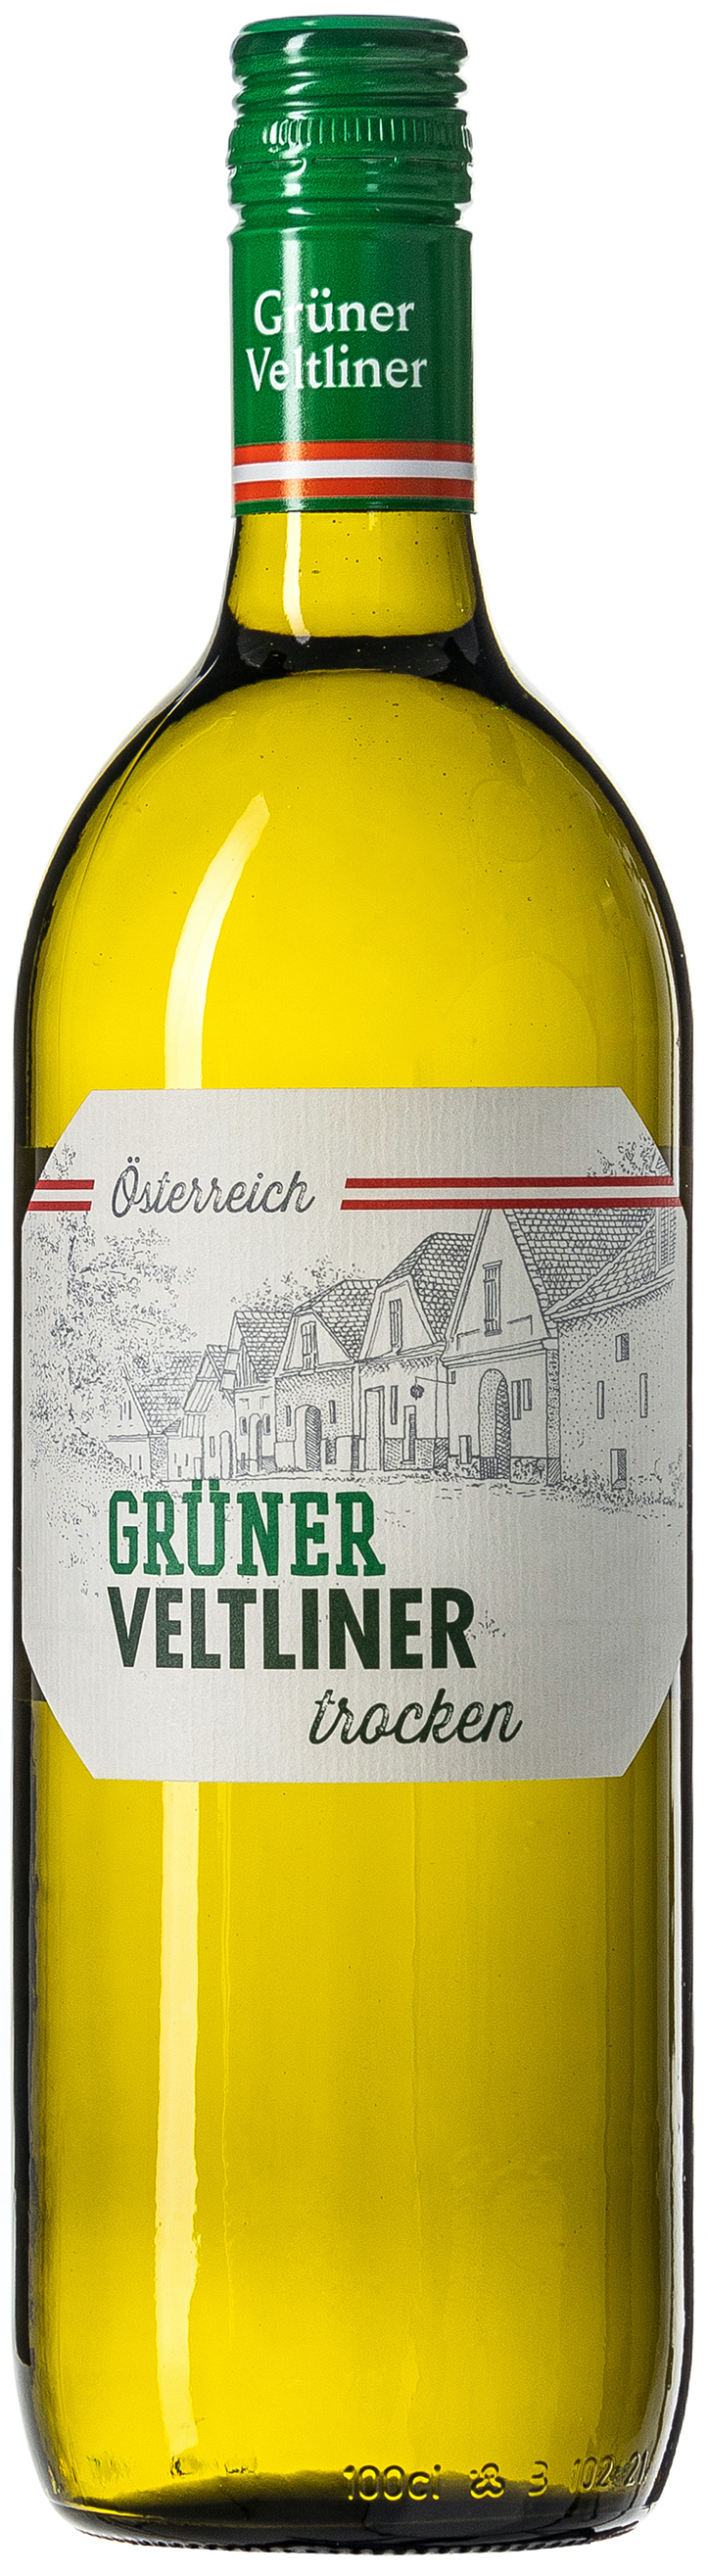 Pfaffl Grüner Veltliner Weinviertel DAC Selection vol. trocken 13% 0,75L